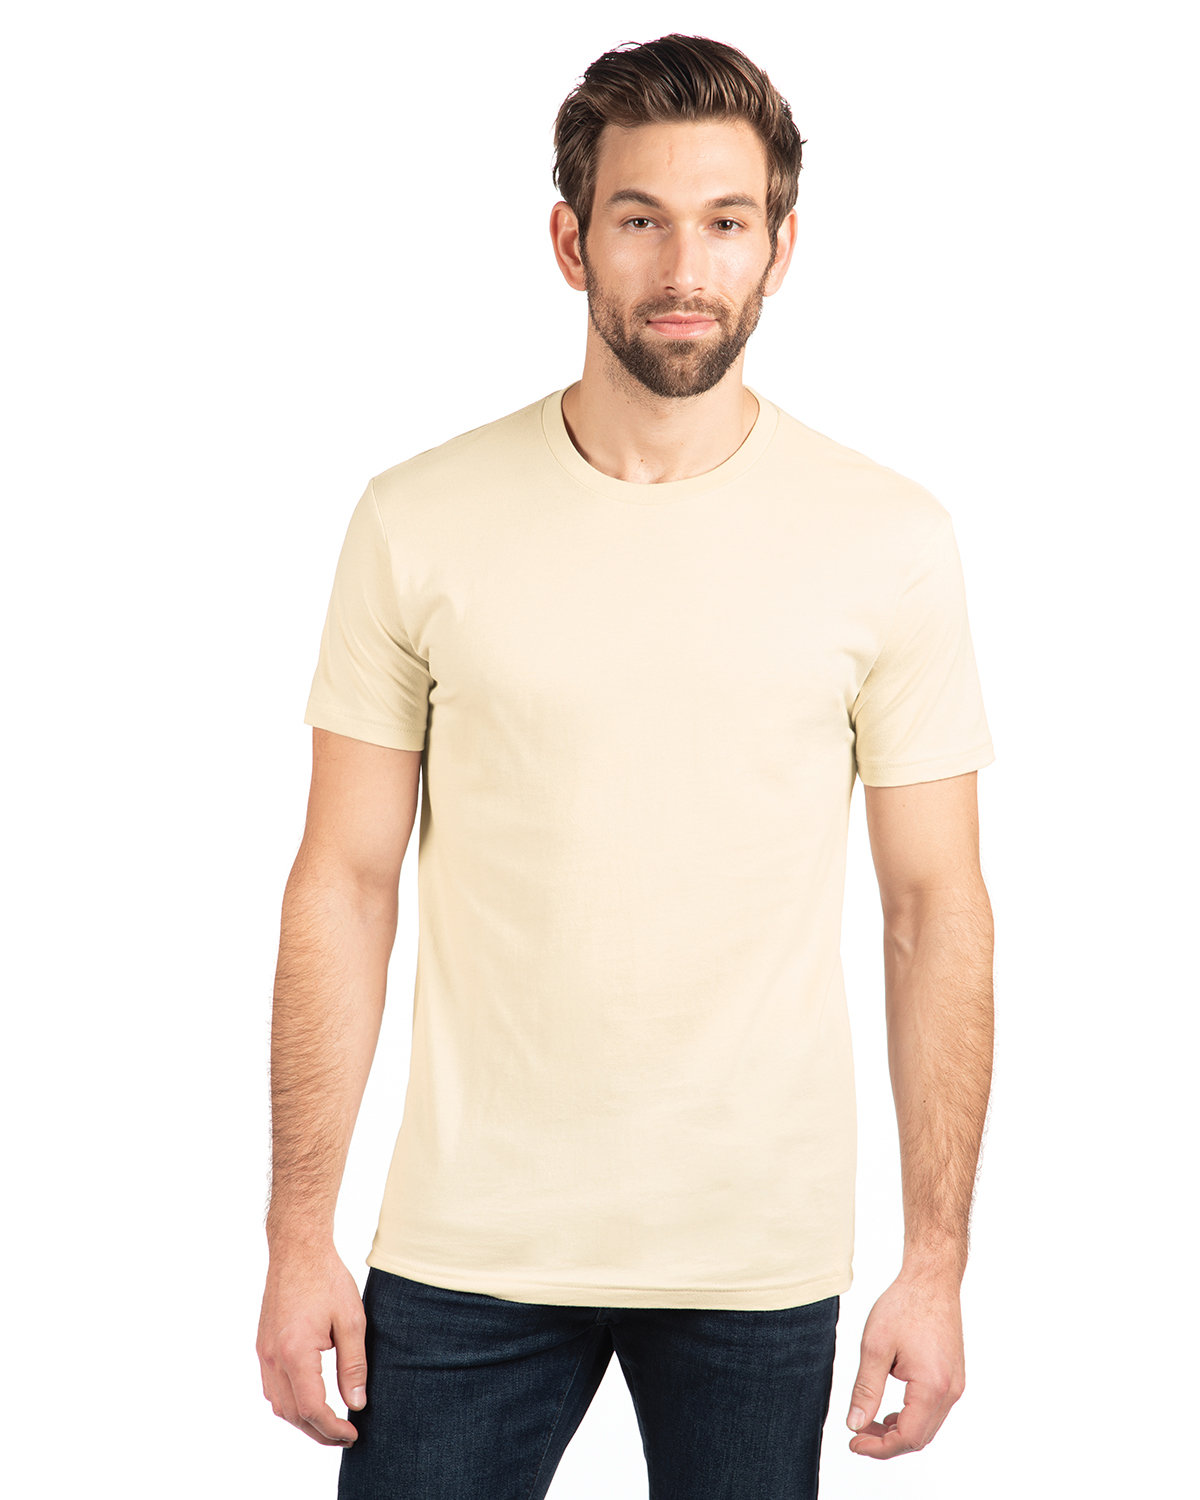 Next Level Unisex Cotton T-Shirt NATURAL 